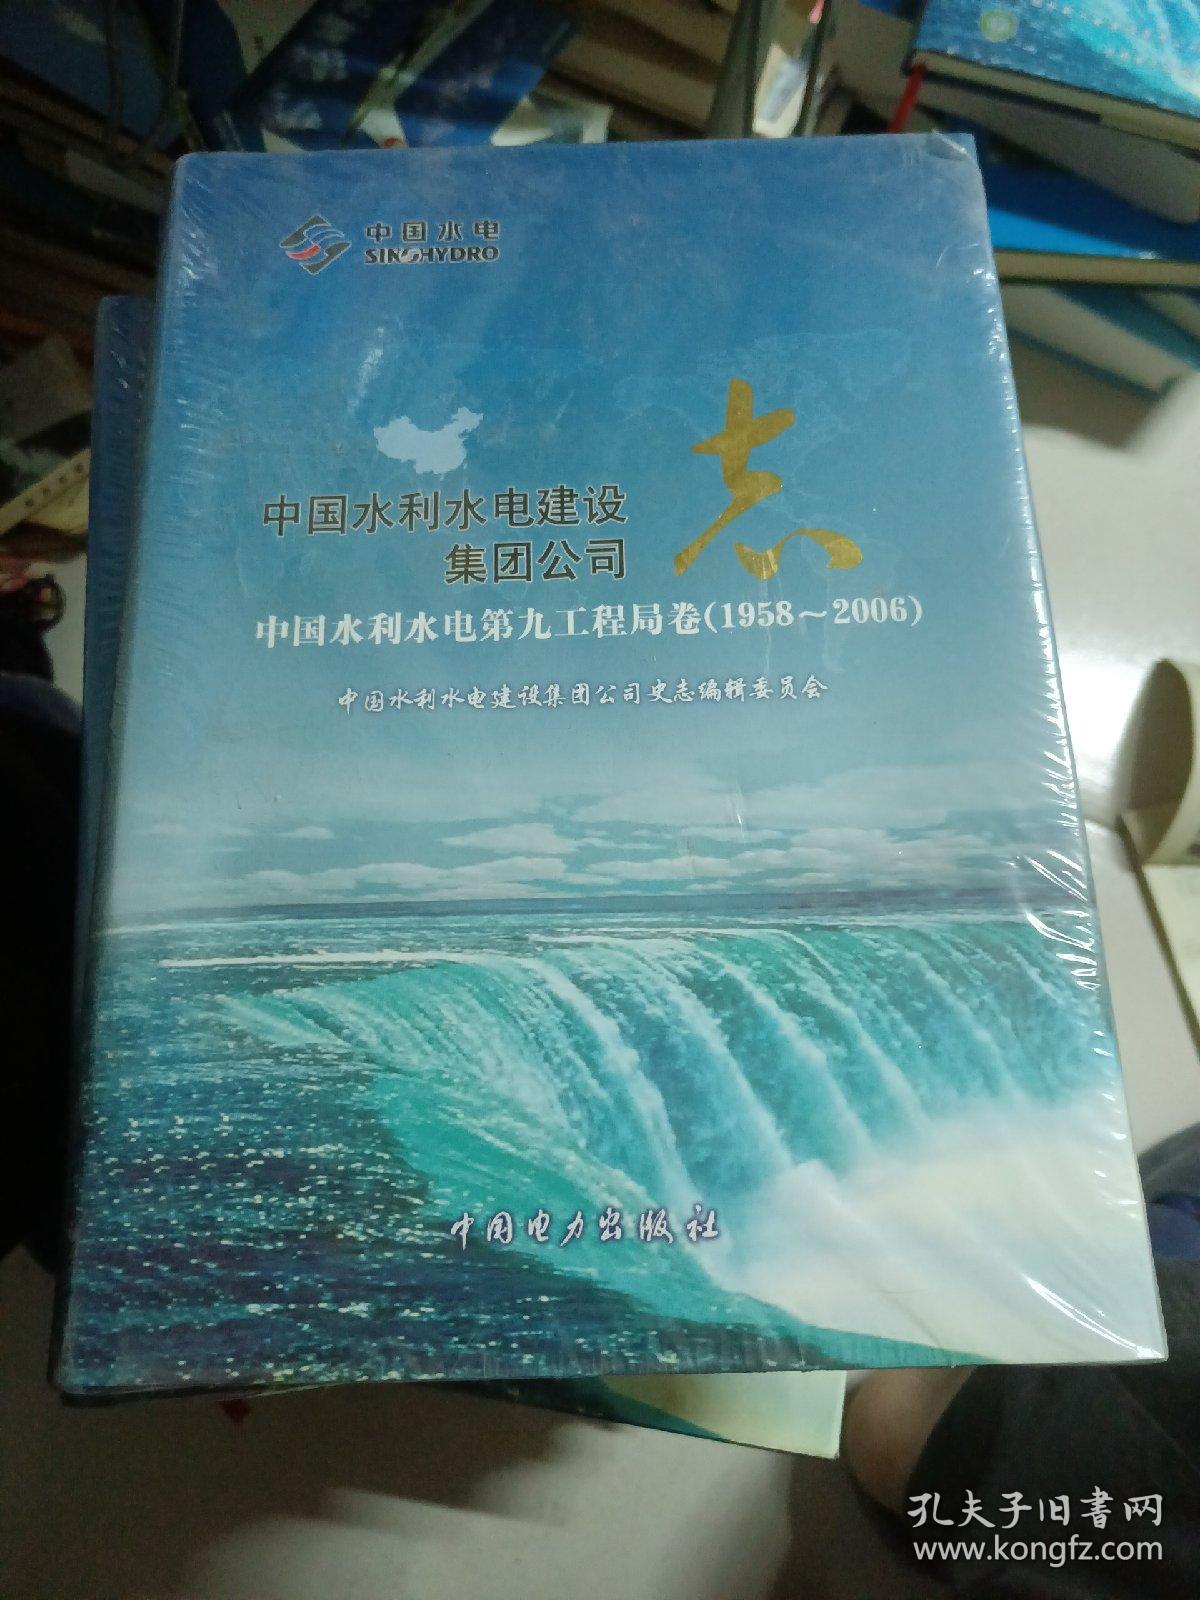 中国水利水电建设集团公司志. 中国水利水电第九工 程局卷. 1958～2006